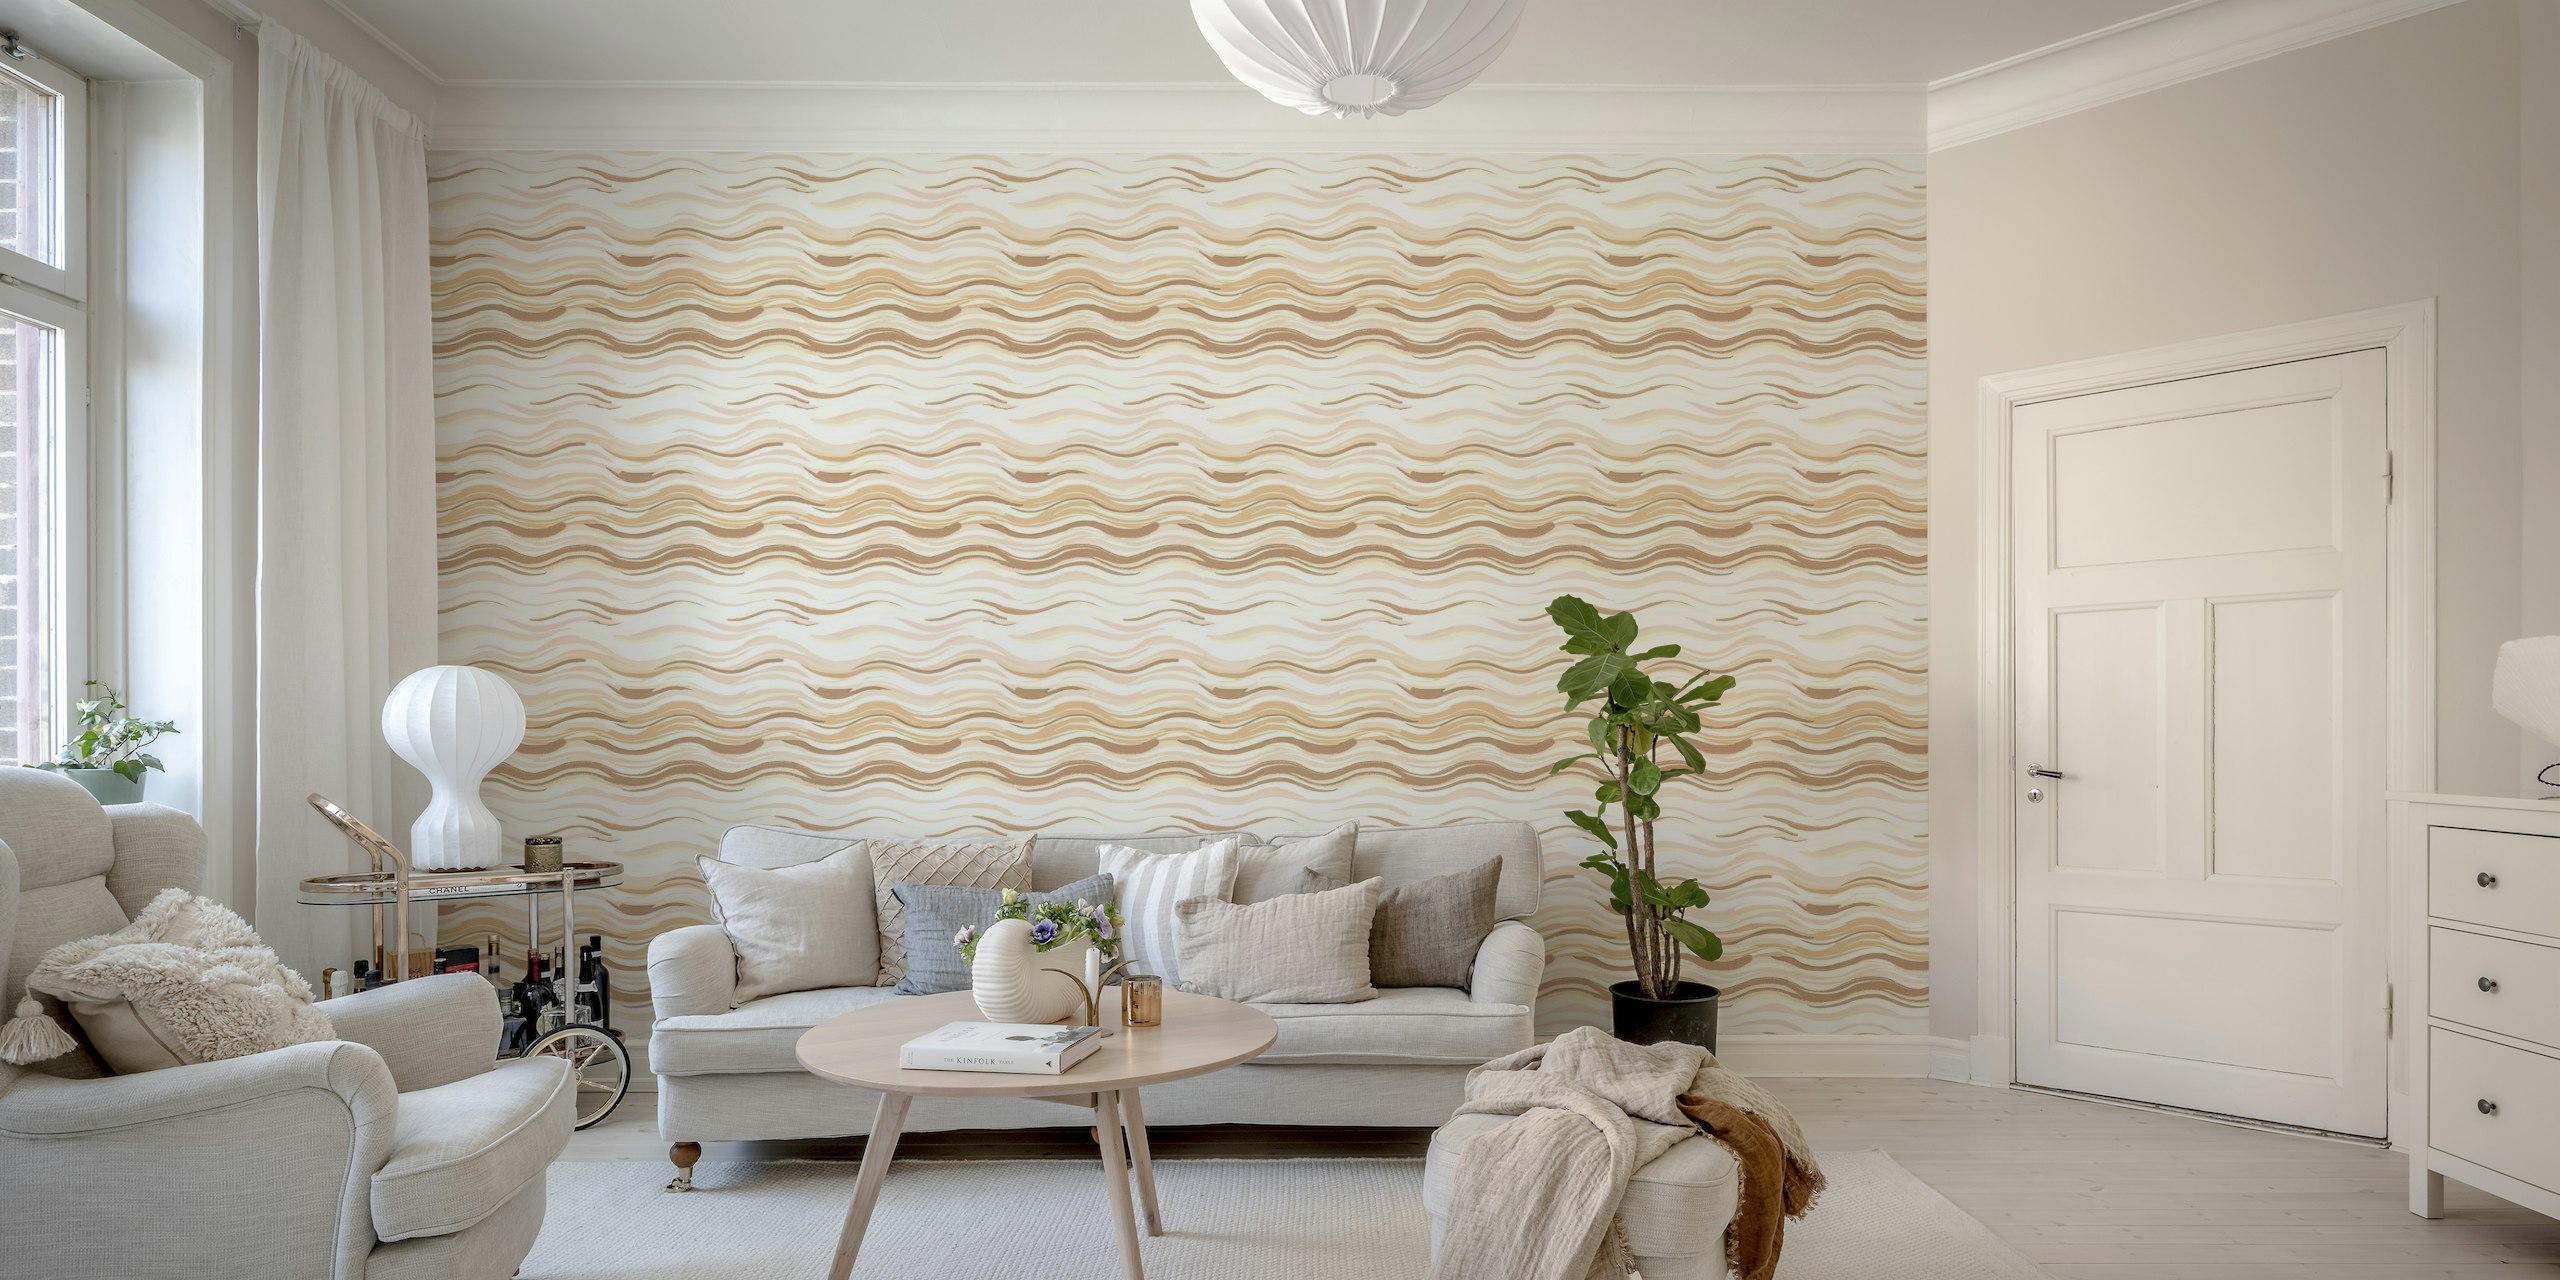 Mural de papel de parede com linhas onduladas em tons terrosos para uma decoração relaxante